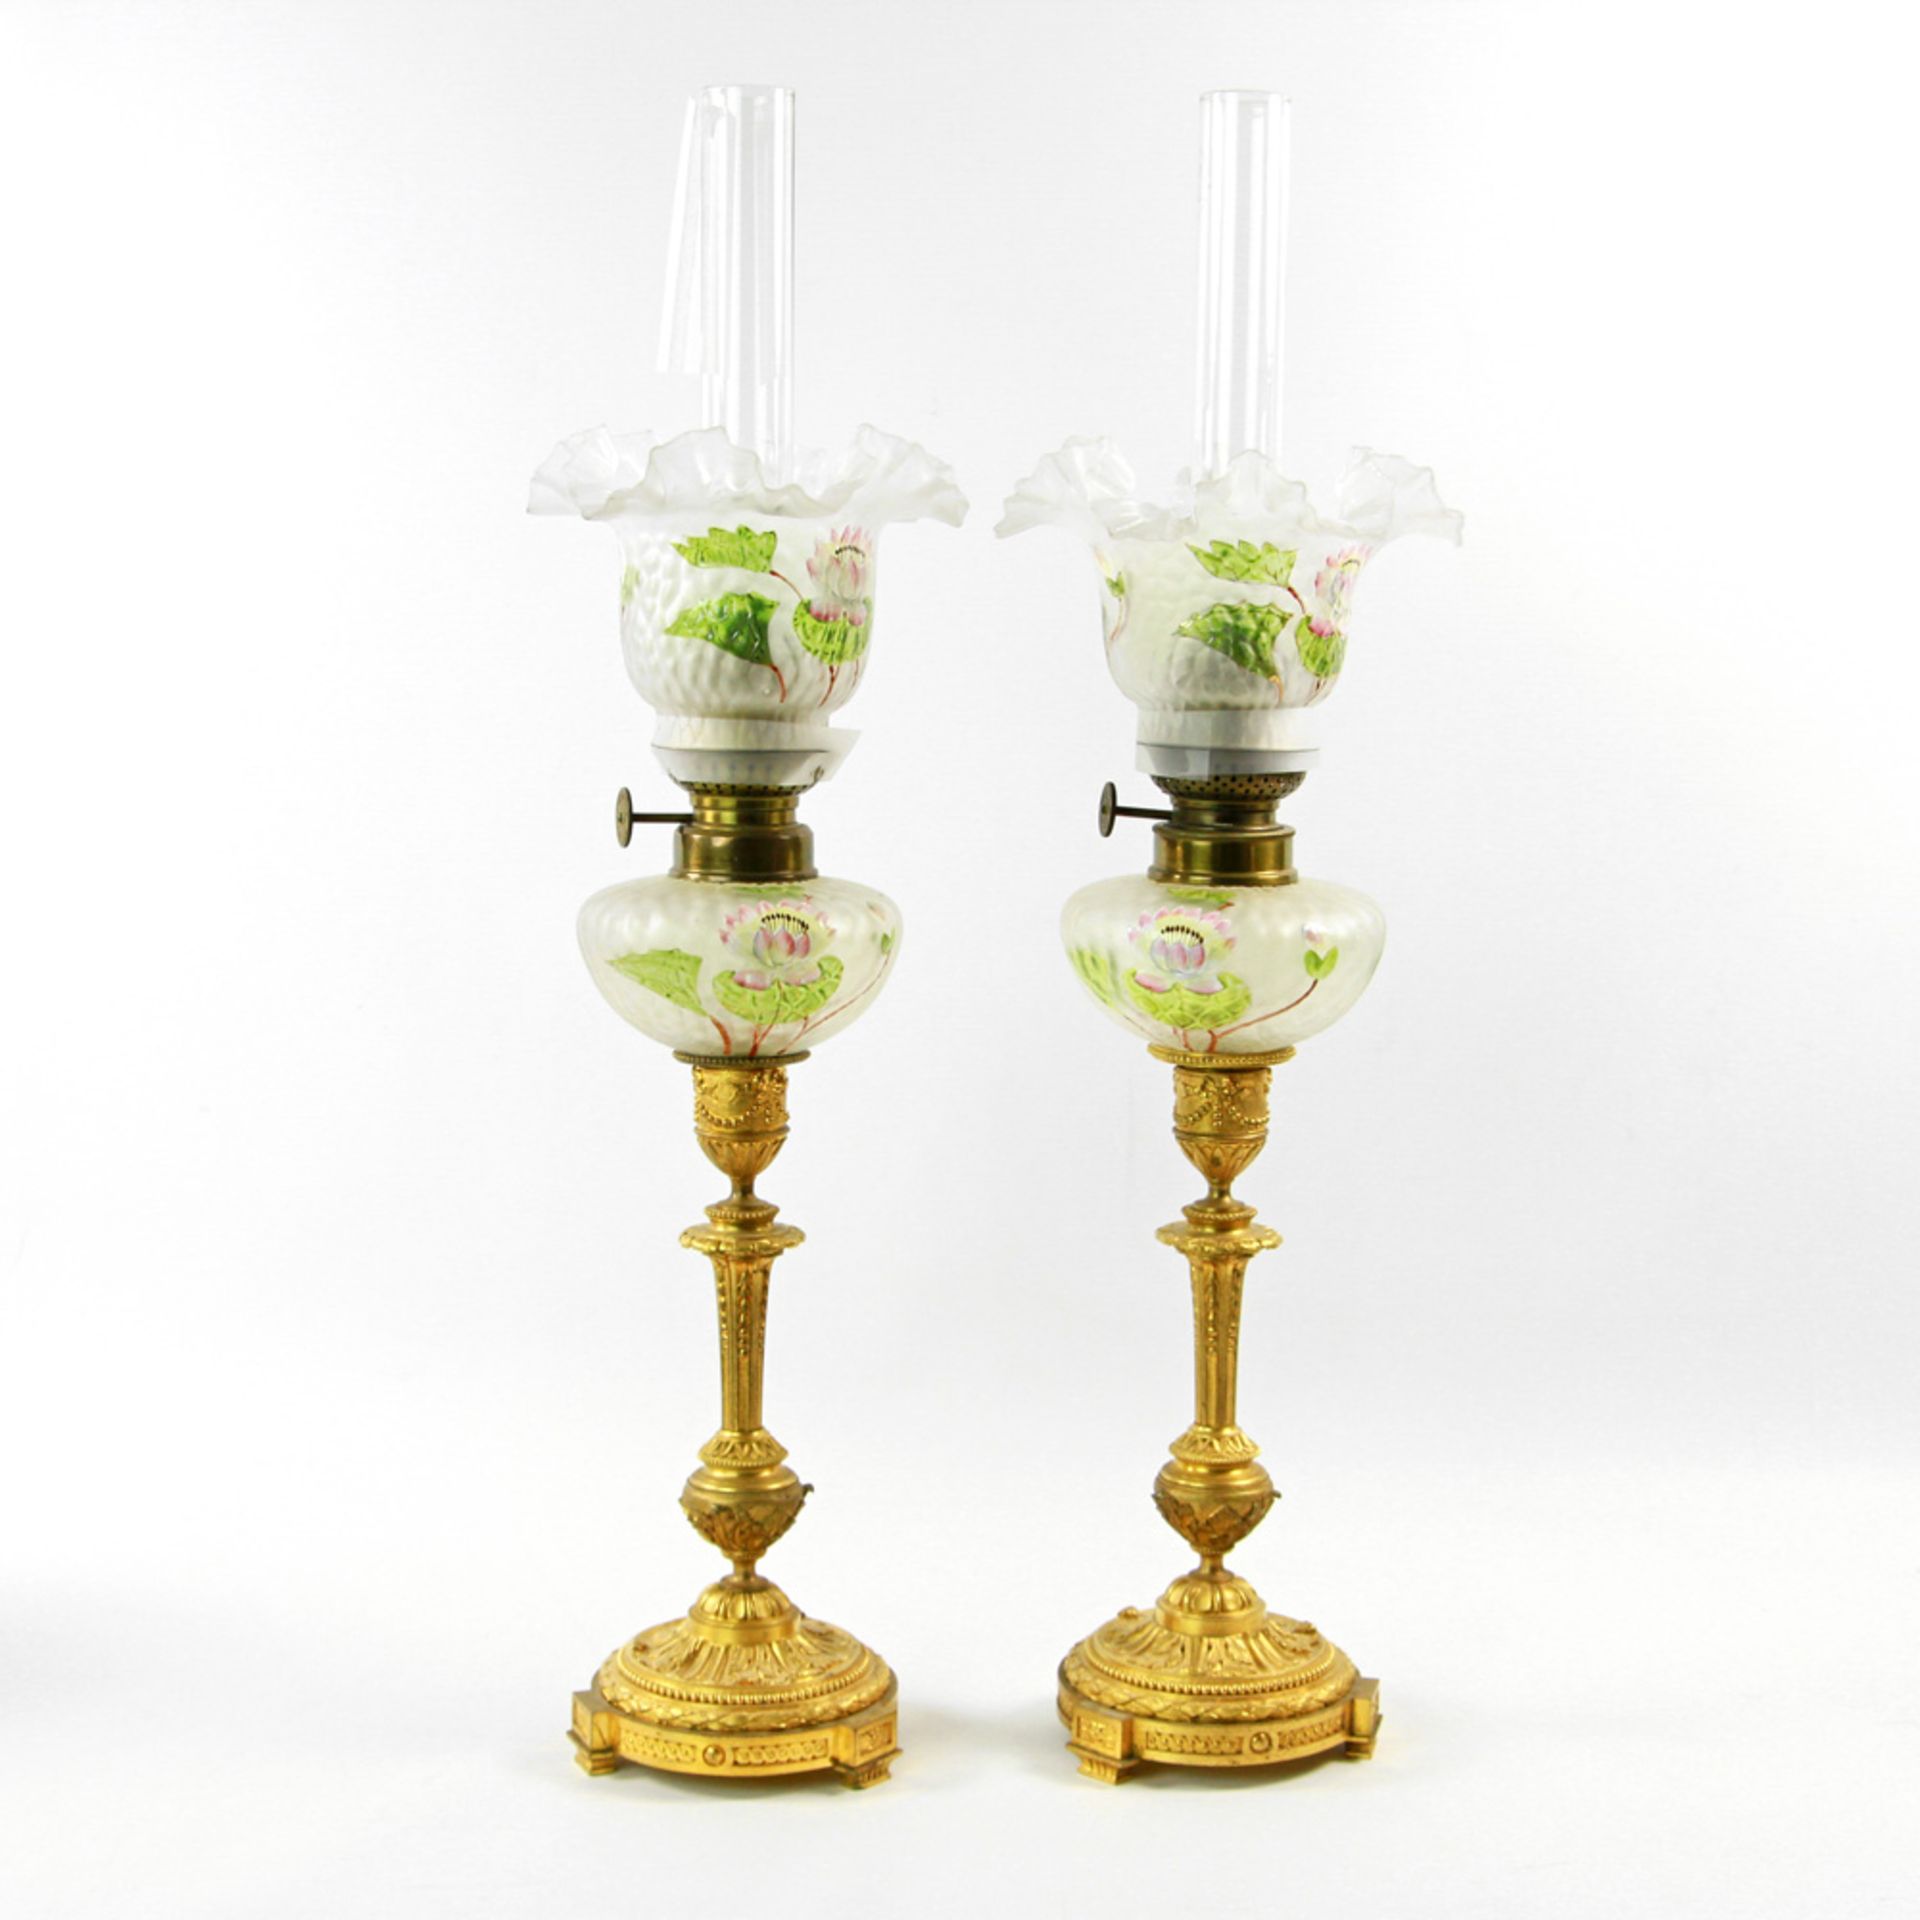 Paar Öllampen, Messing/ Glas, wohl 19./ 20. Jh. Mit Reliefdekor reich dekorierter Fuß, Ölbehälter